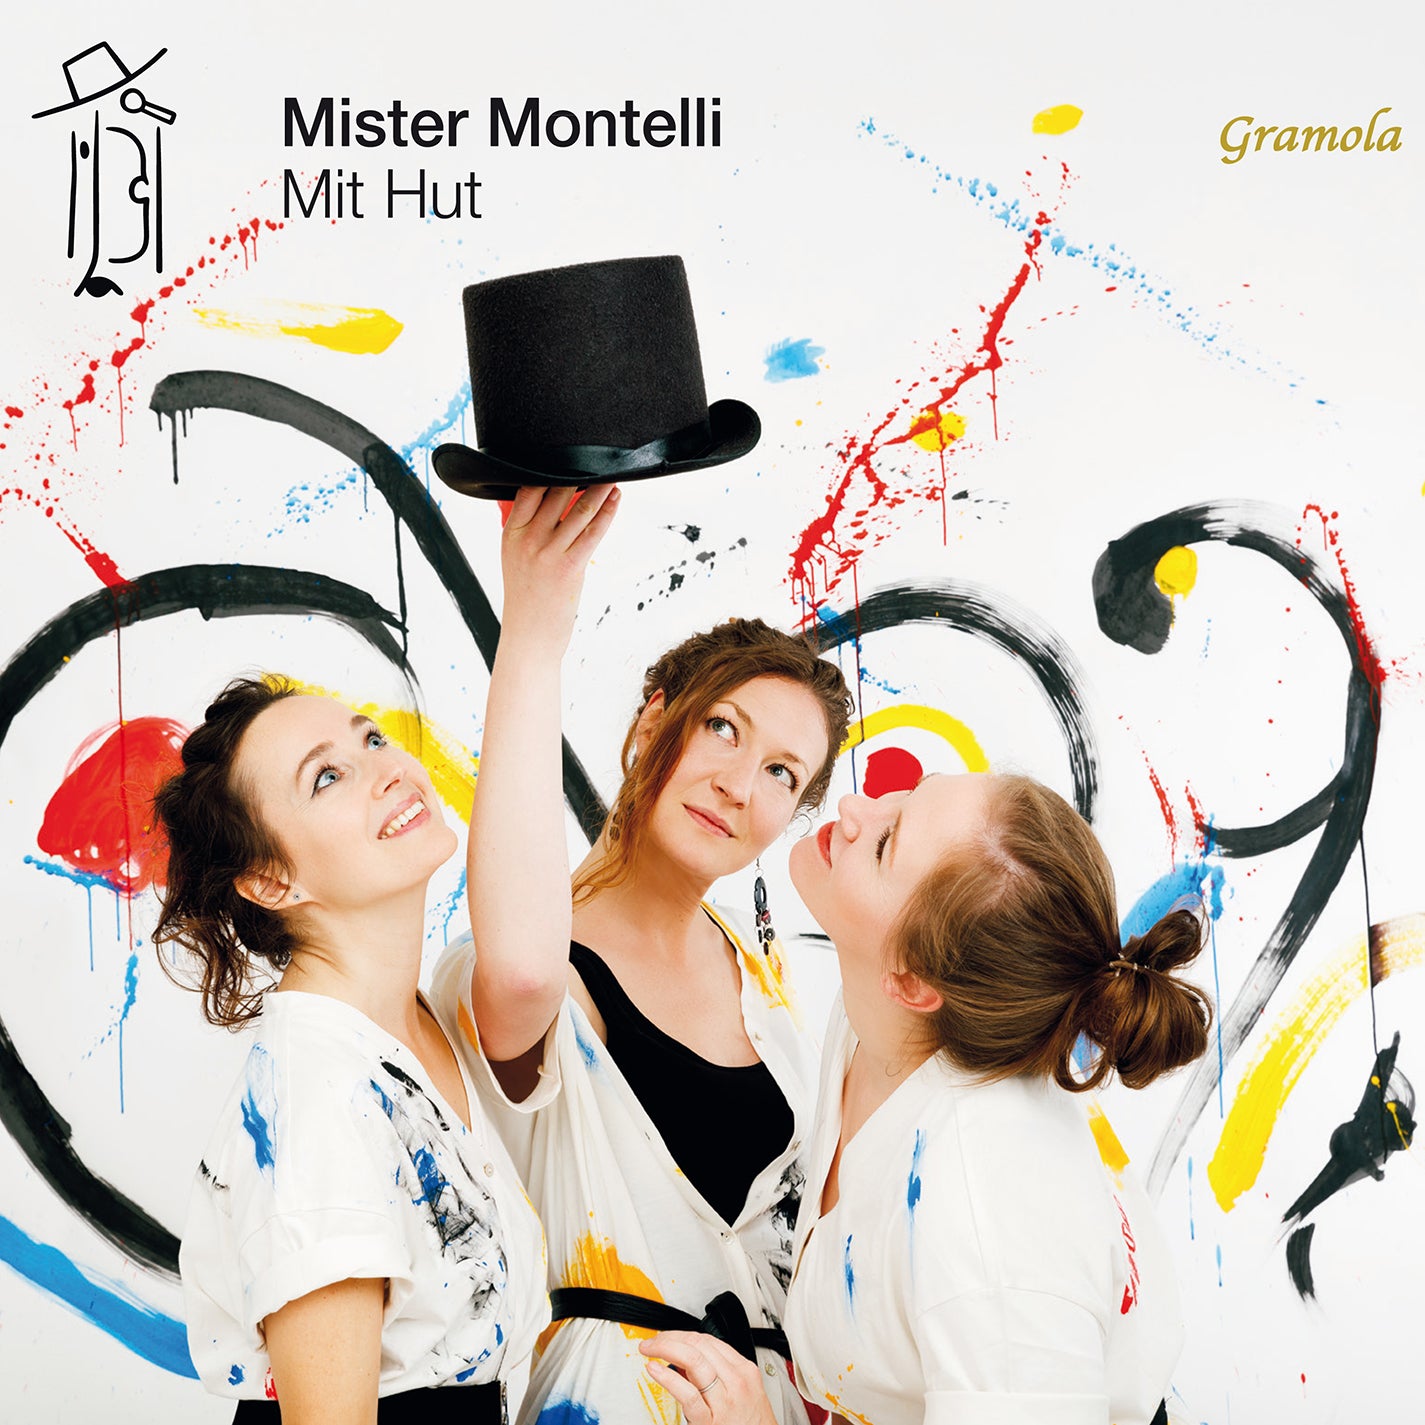 Mit Hut / Mister Montelli